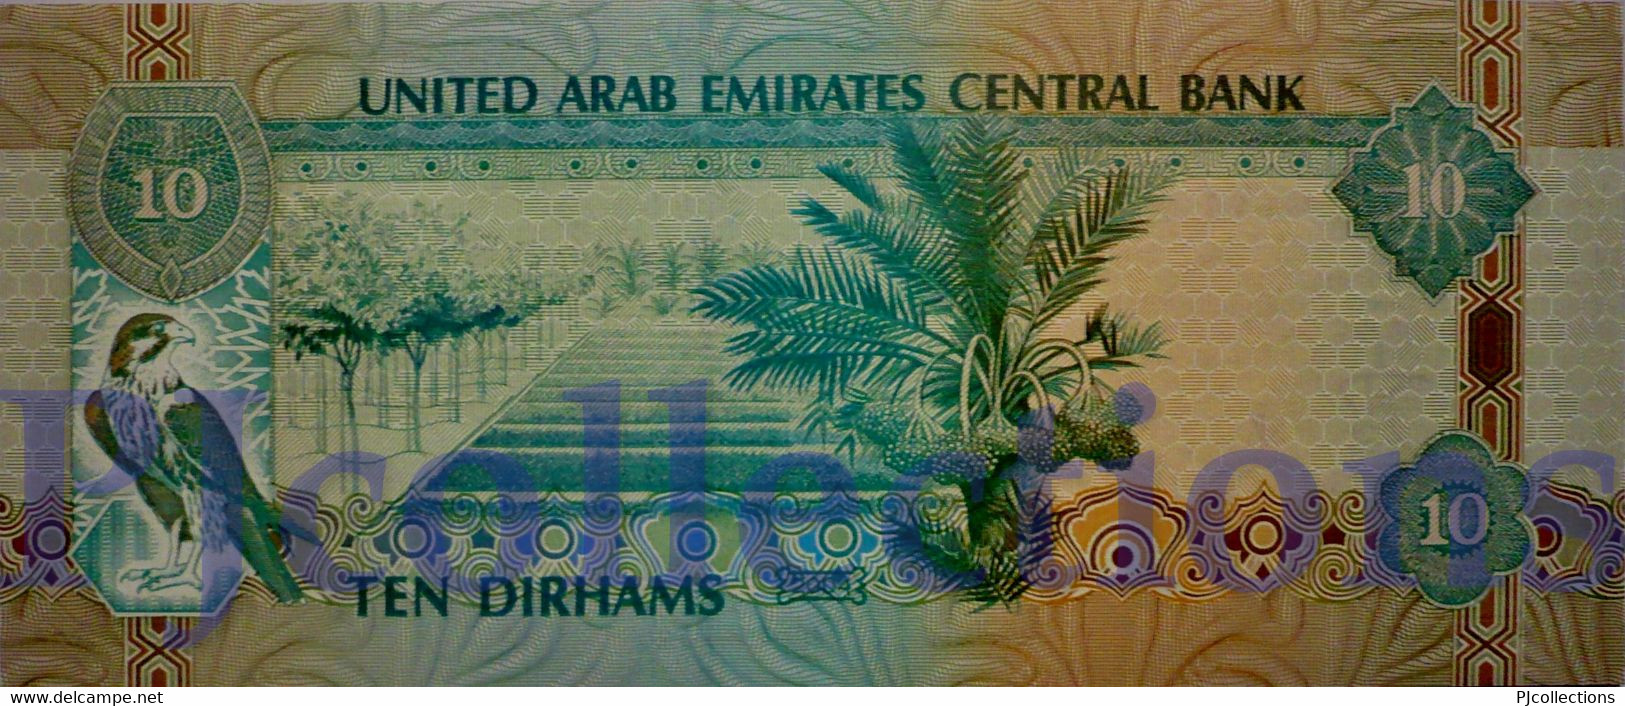 UNITED ARAB EMIRATES 10 DIRHAMS 2004 PICK 20c UNC - Emirats Arabes Unis